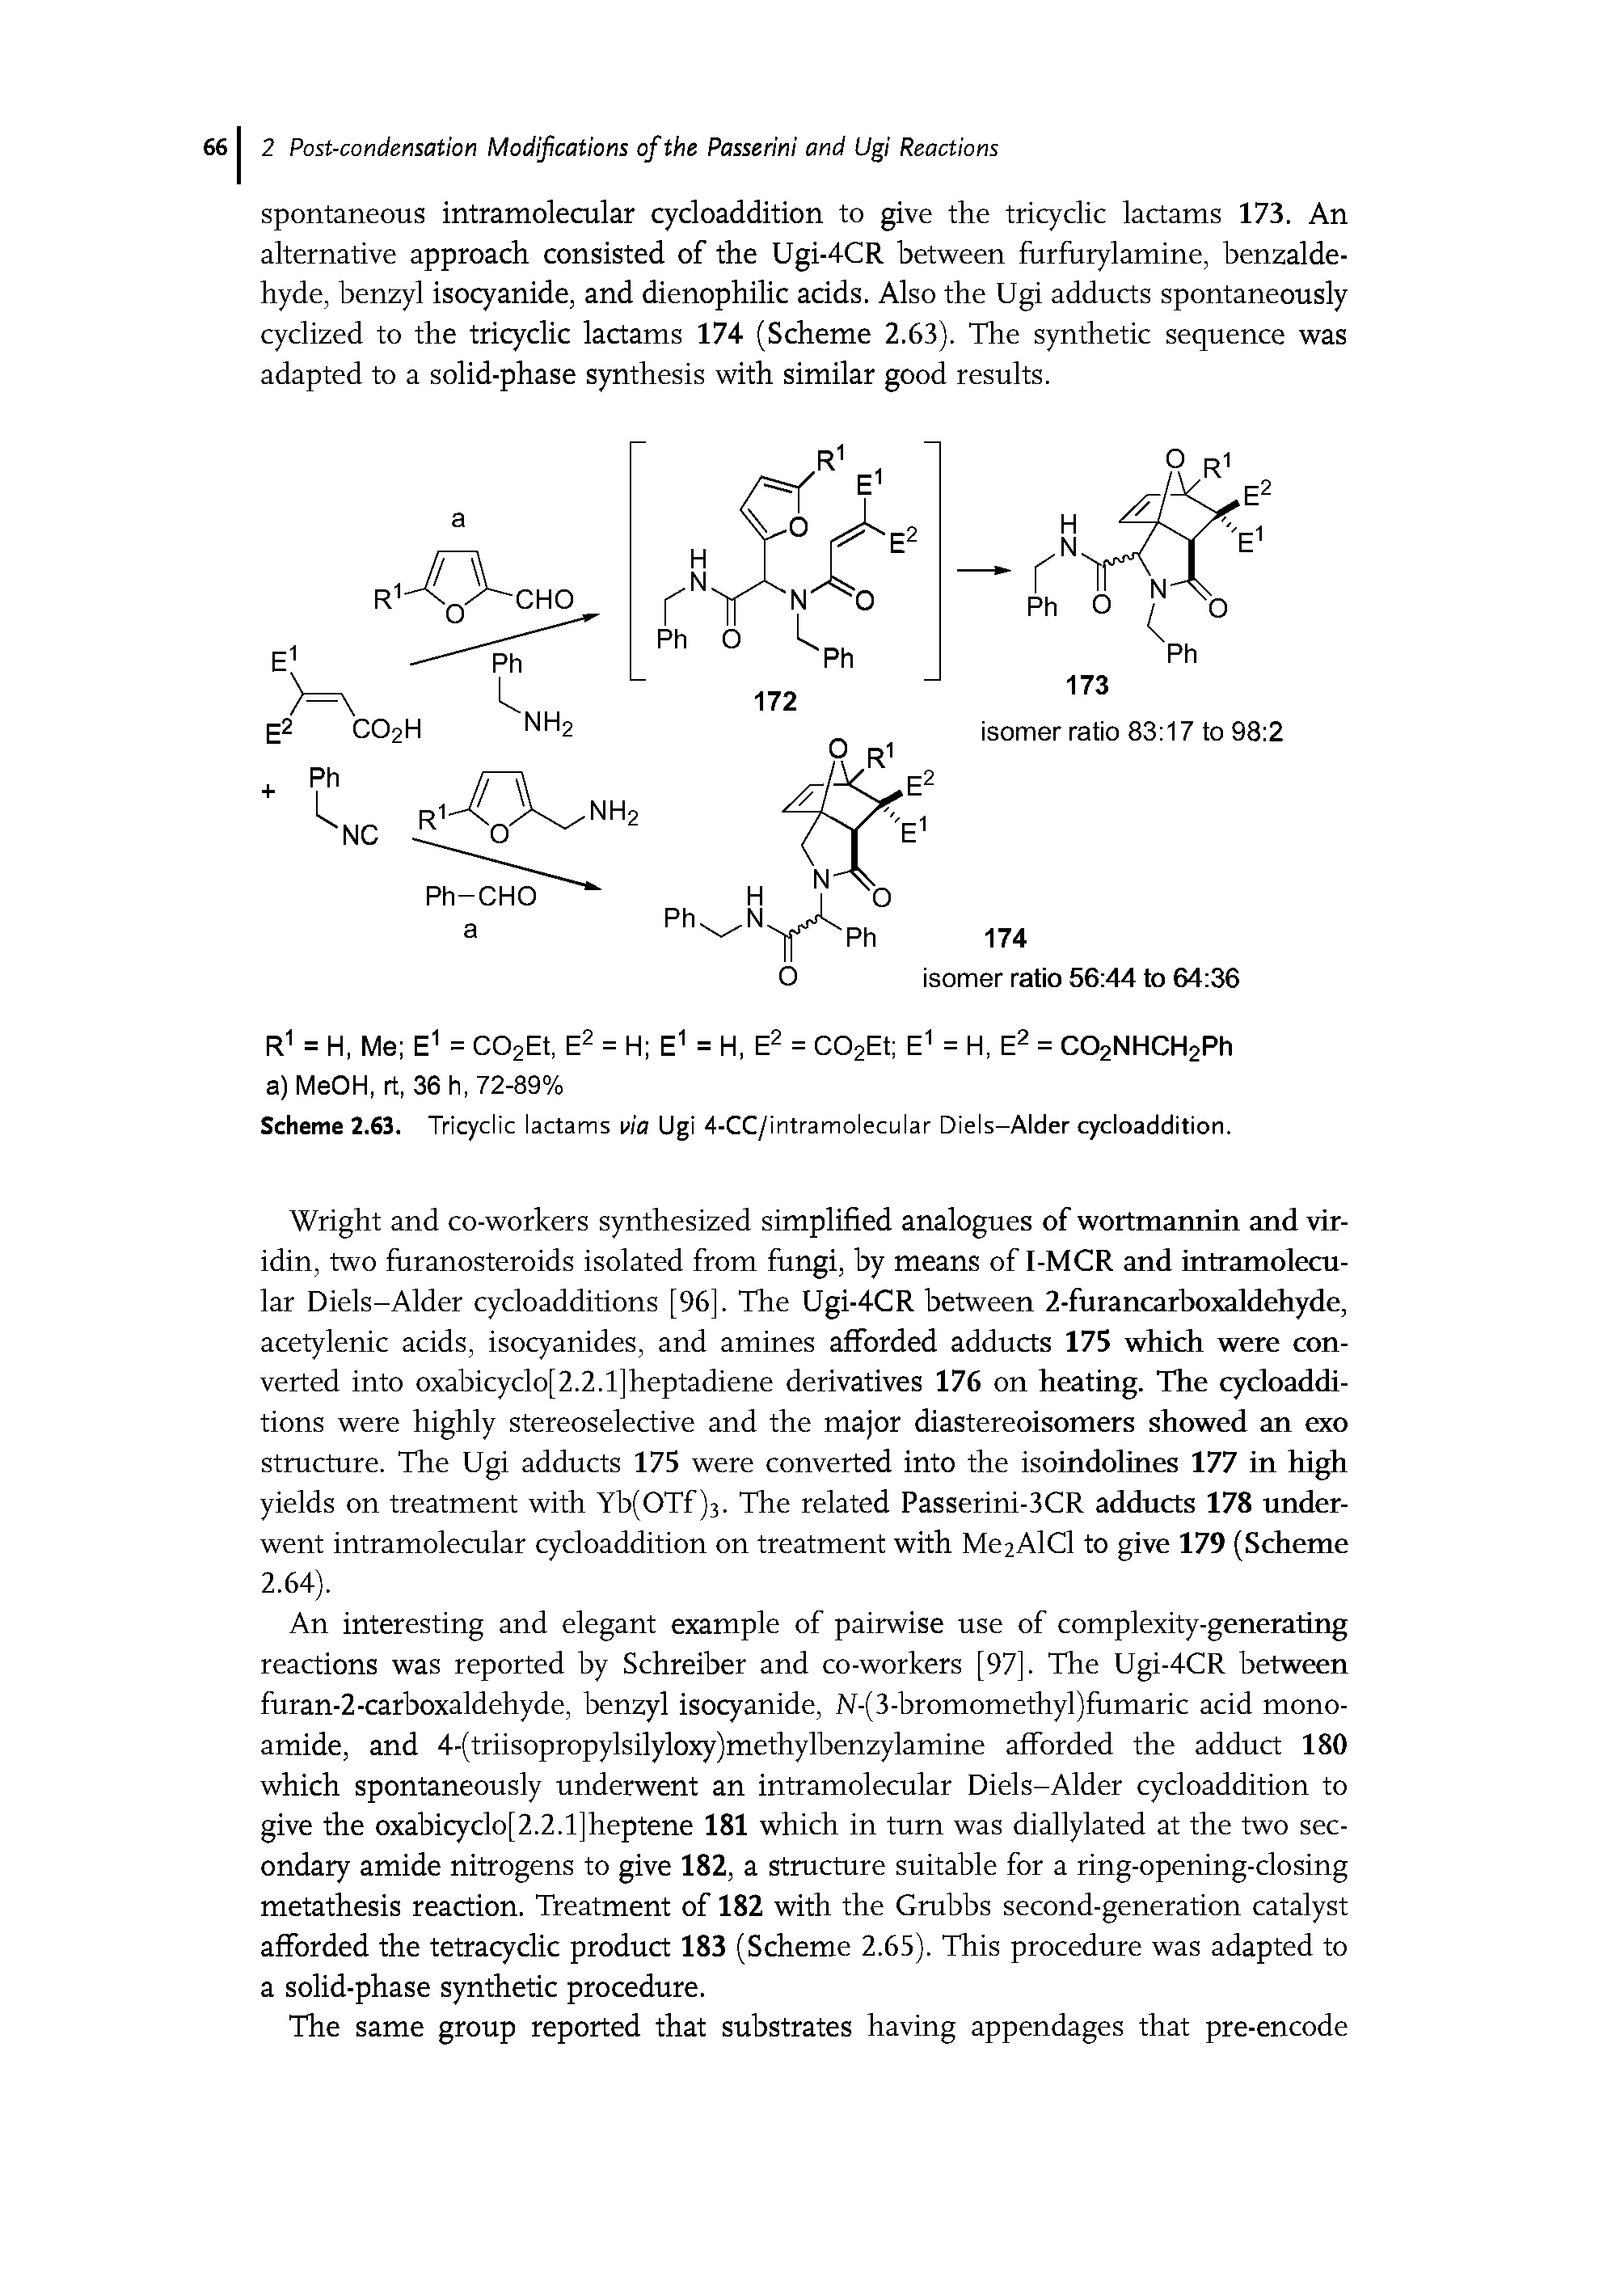 Scheme 2.63. Tricyclic lactams via Ugi 4-CC/intramolecular Diels-Alder cycloaddition.